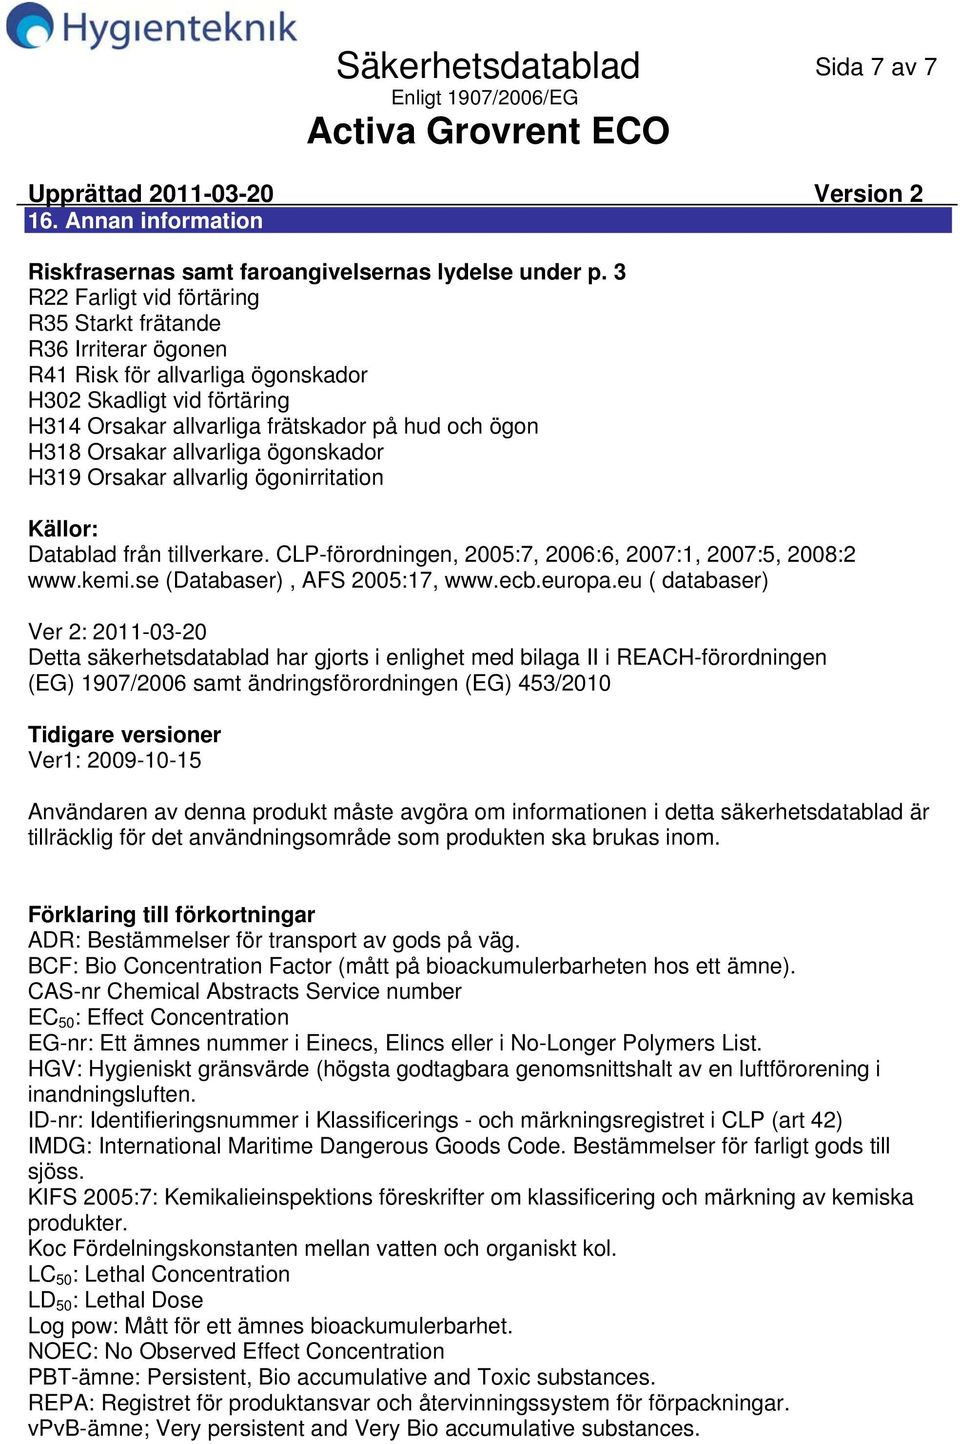 allvarliga ögonskador H319 Orsakar allvarlig ögonirritation Källor: Datablad från tillverkare. CLPförordningen, 2005:7, 2006:6, 2007:1, 2007:5, 2008:2 www.kemi.se (Databaser), AFS 2005:17, www.ecb.